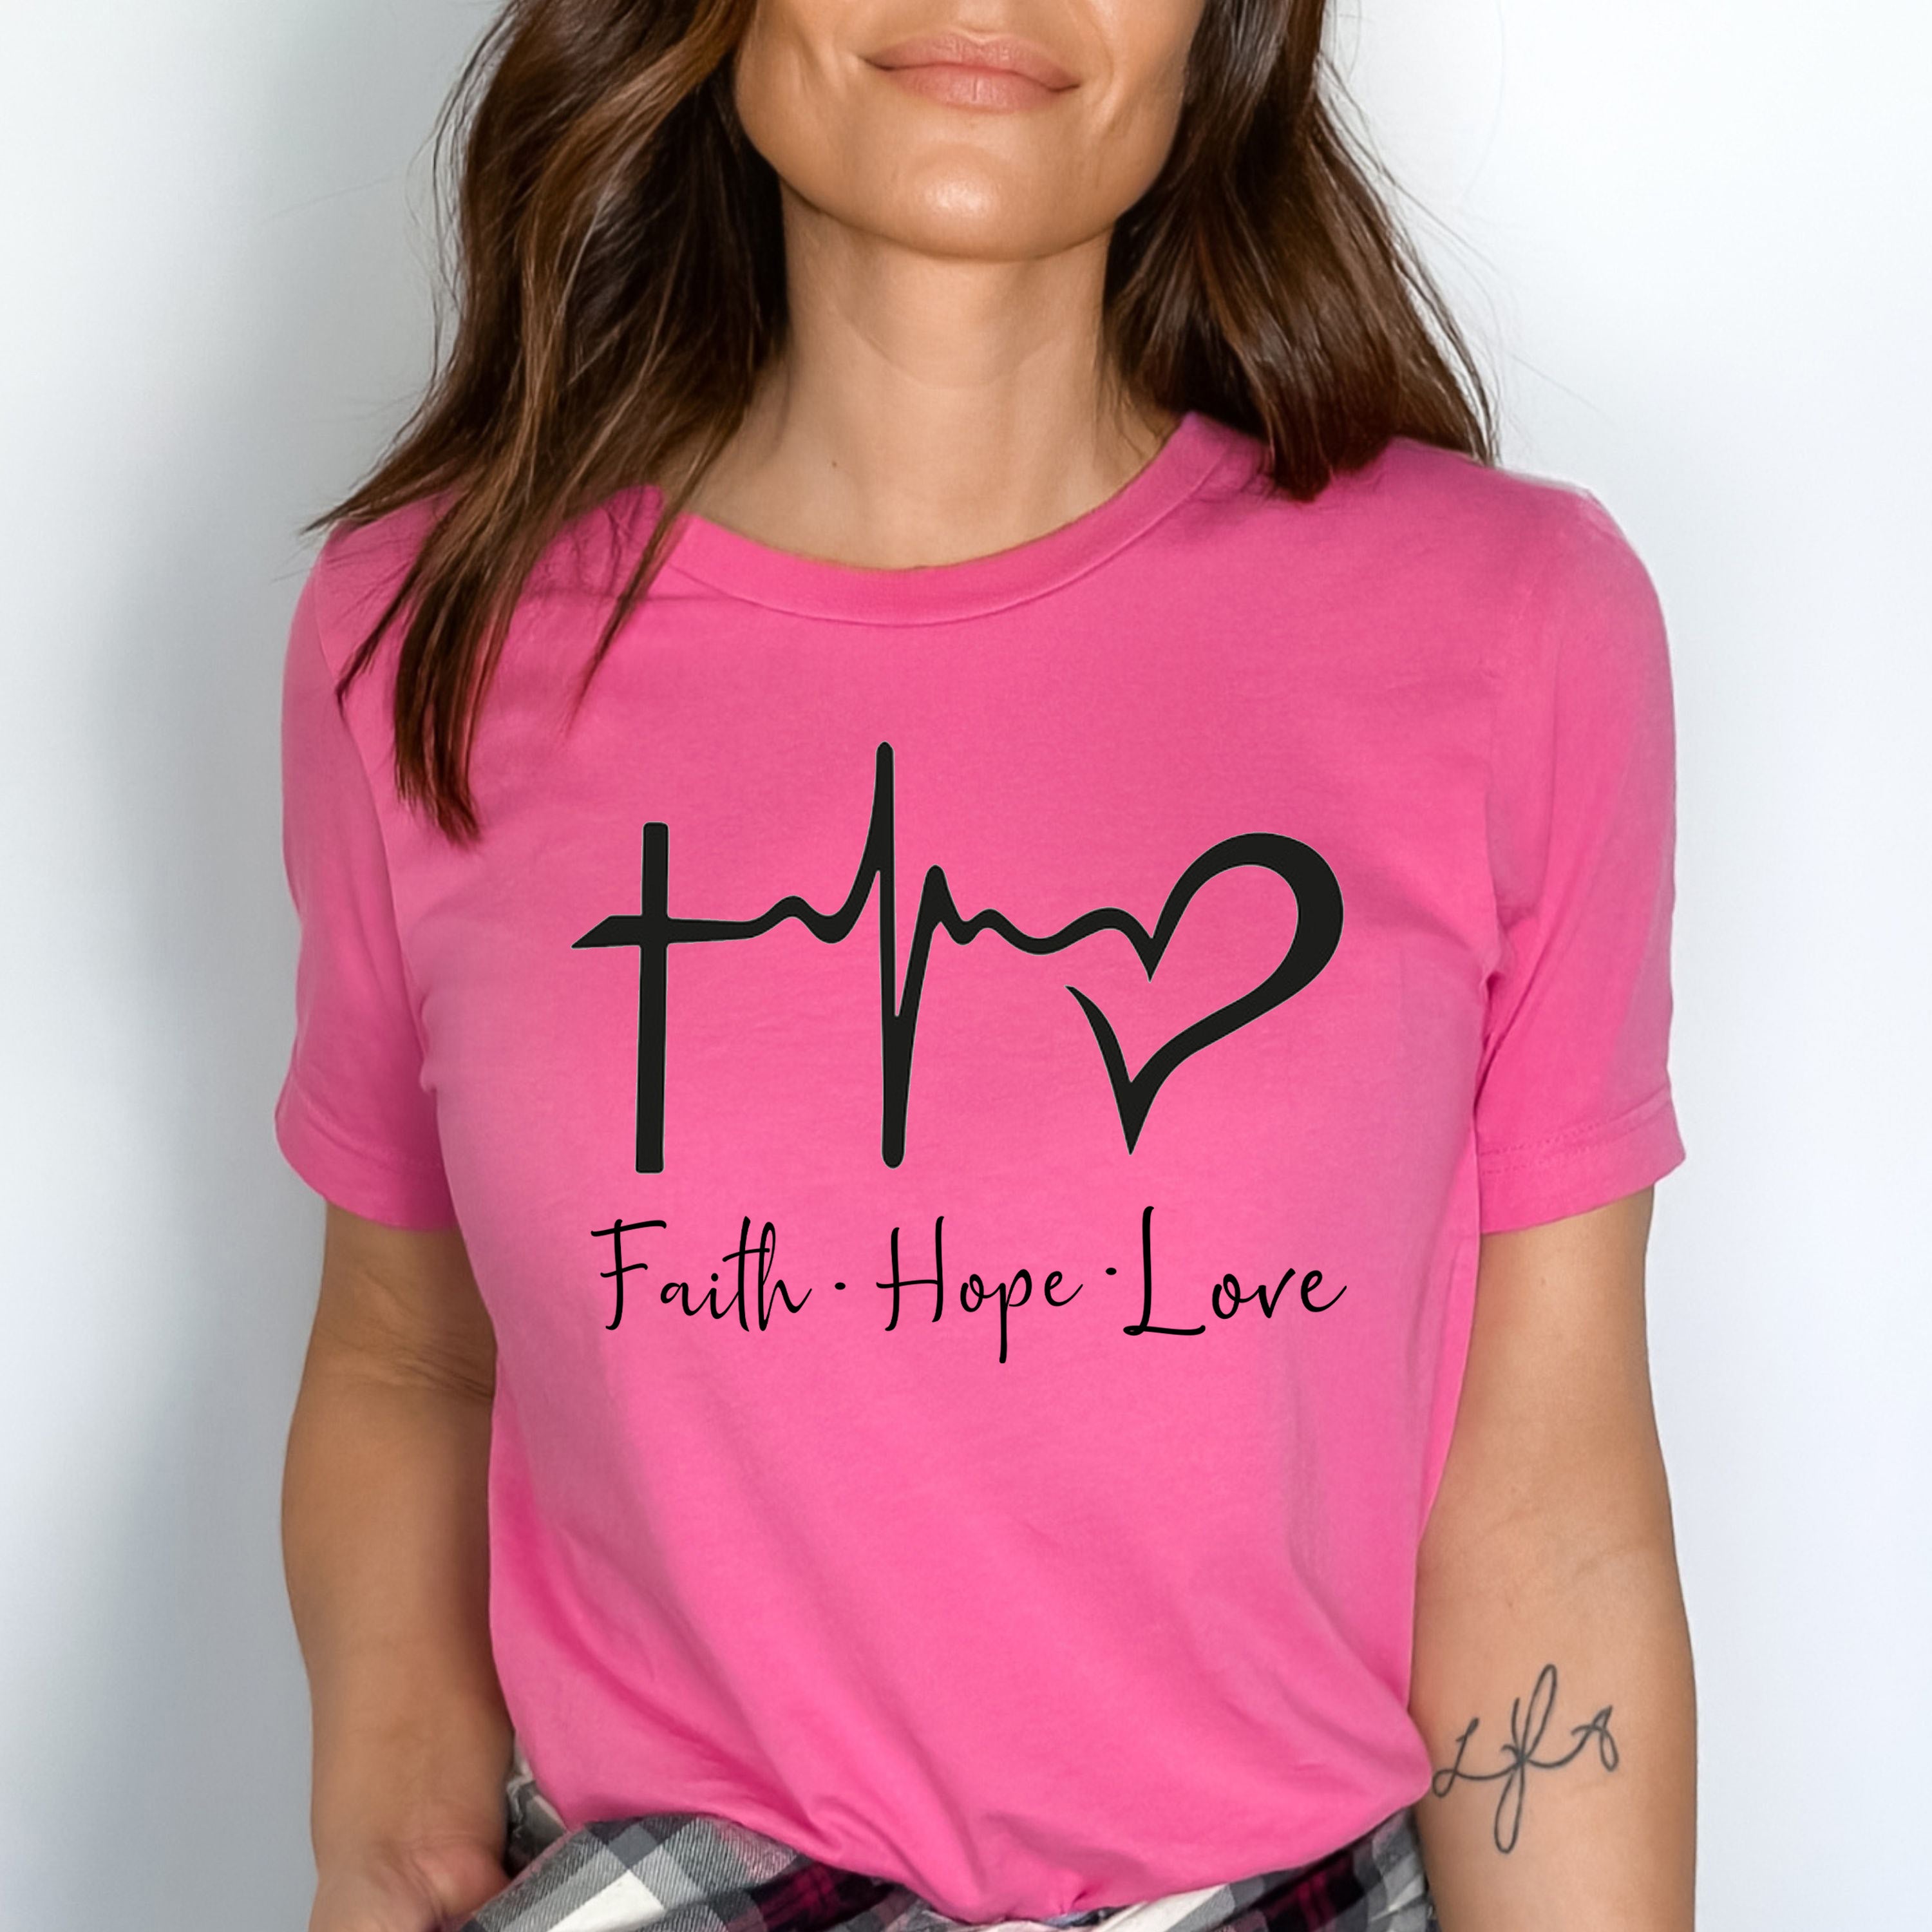 "Faith. Hope. Love".